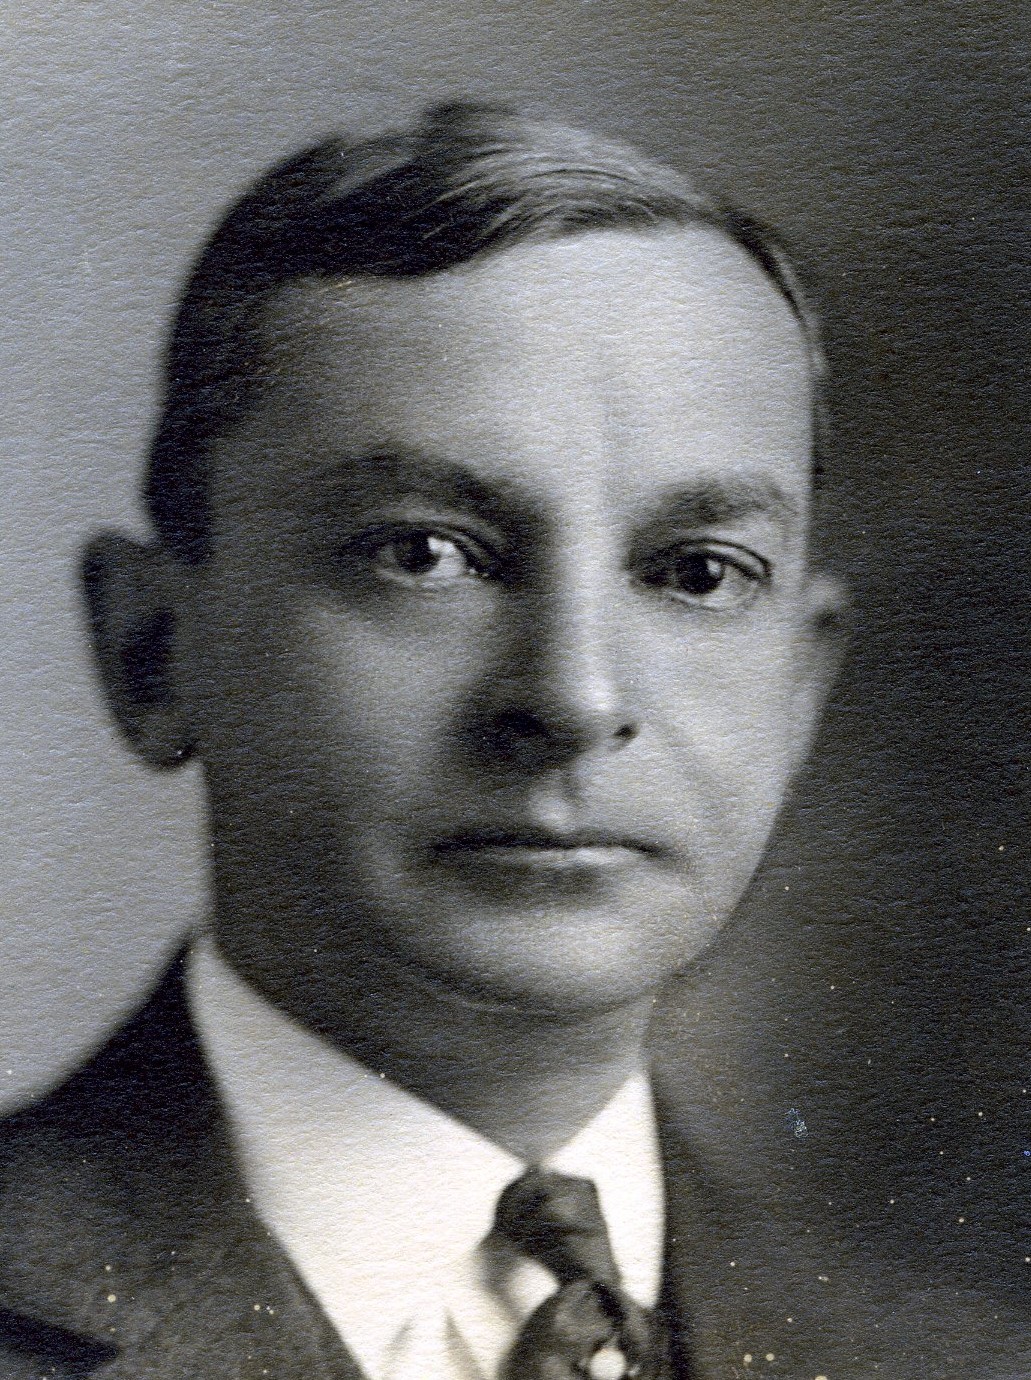 Member portrait of Herbert C. Lakin